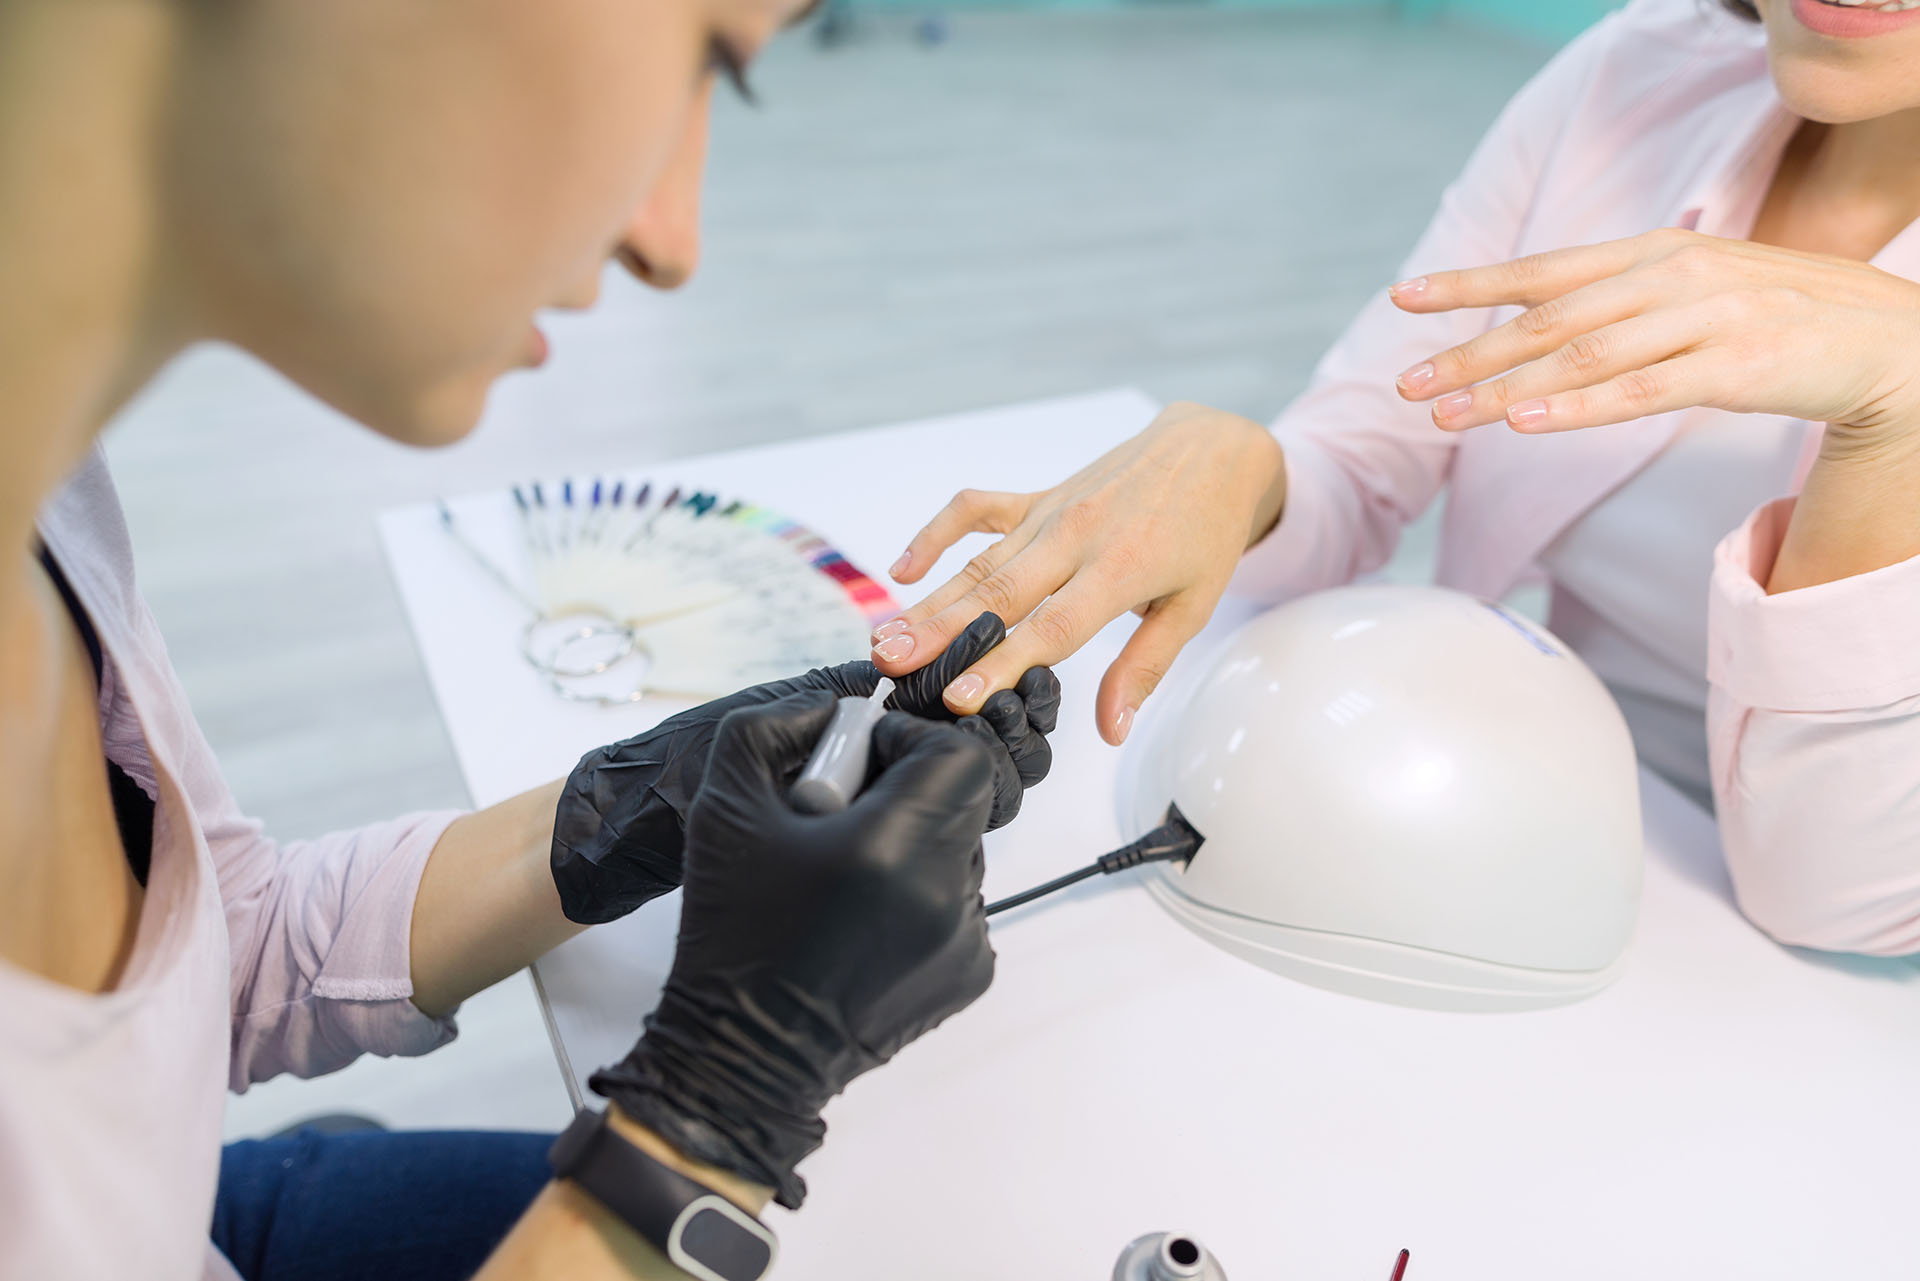 Detailansicht einer professionellen Maniküre mit Nagellackanwendung, Darstellung von Expertise in Nagelpflege und Nageldesign